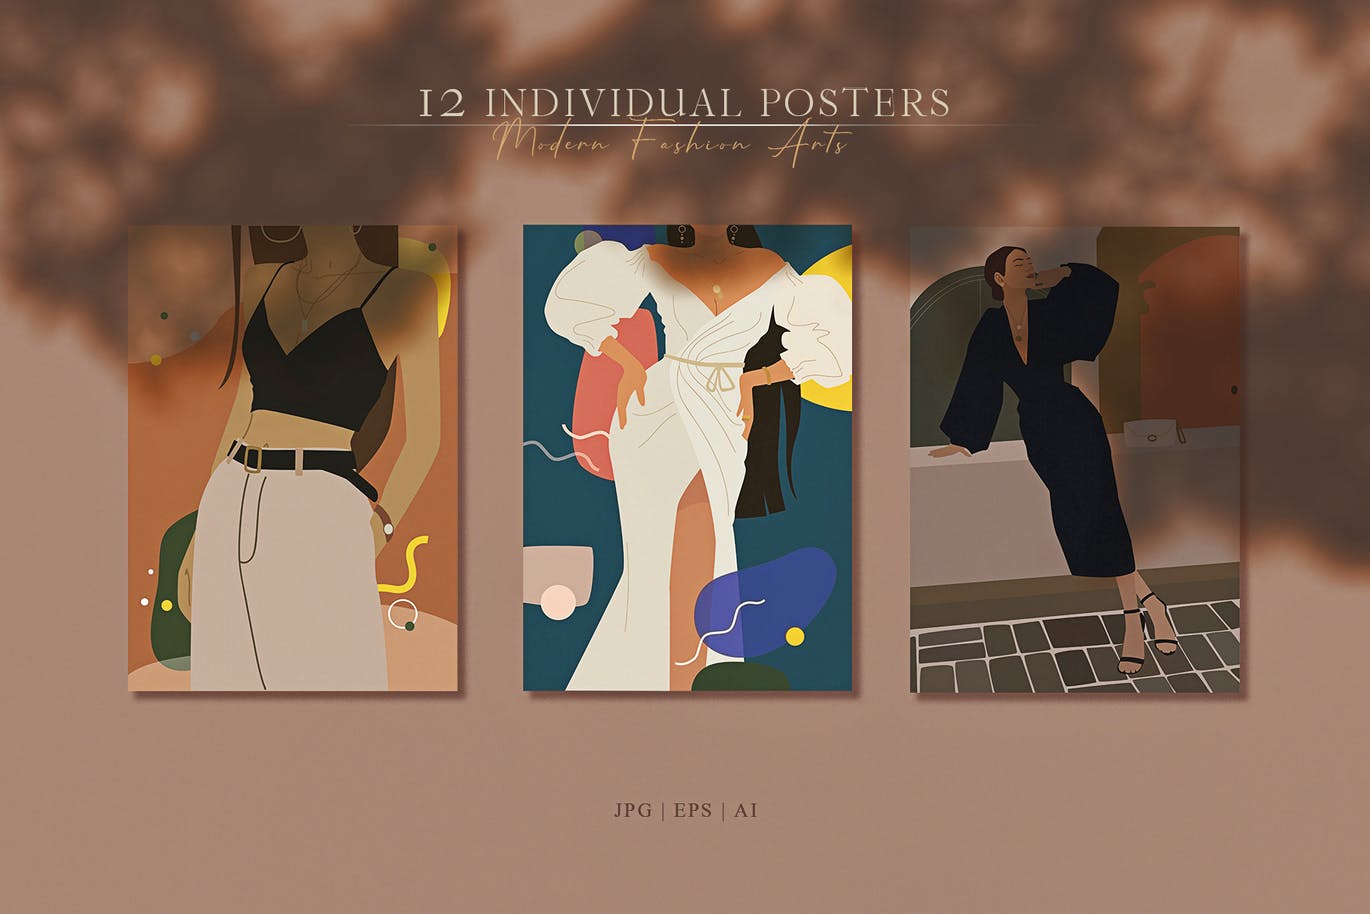 精品时尚高端简约优雅抽象女人肖像海报设计矢量插画集合-AI，JPG，PNG，EPS源文件,编号:82628942